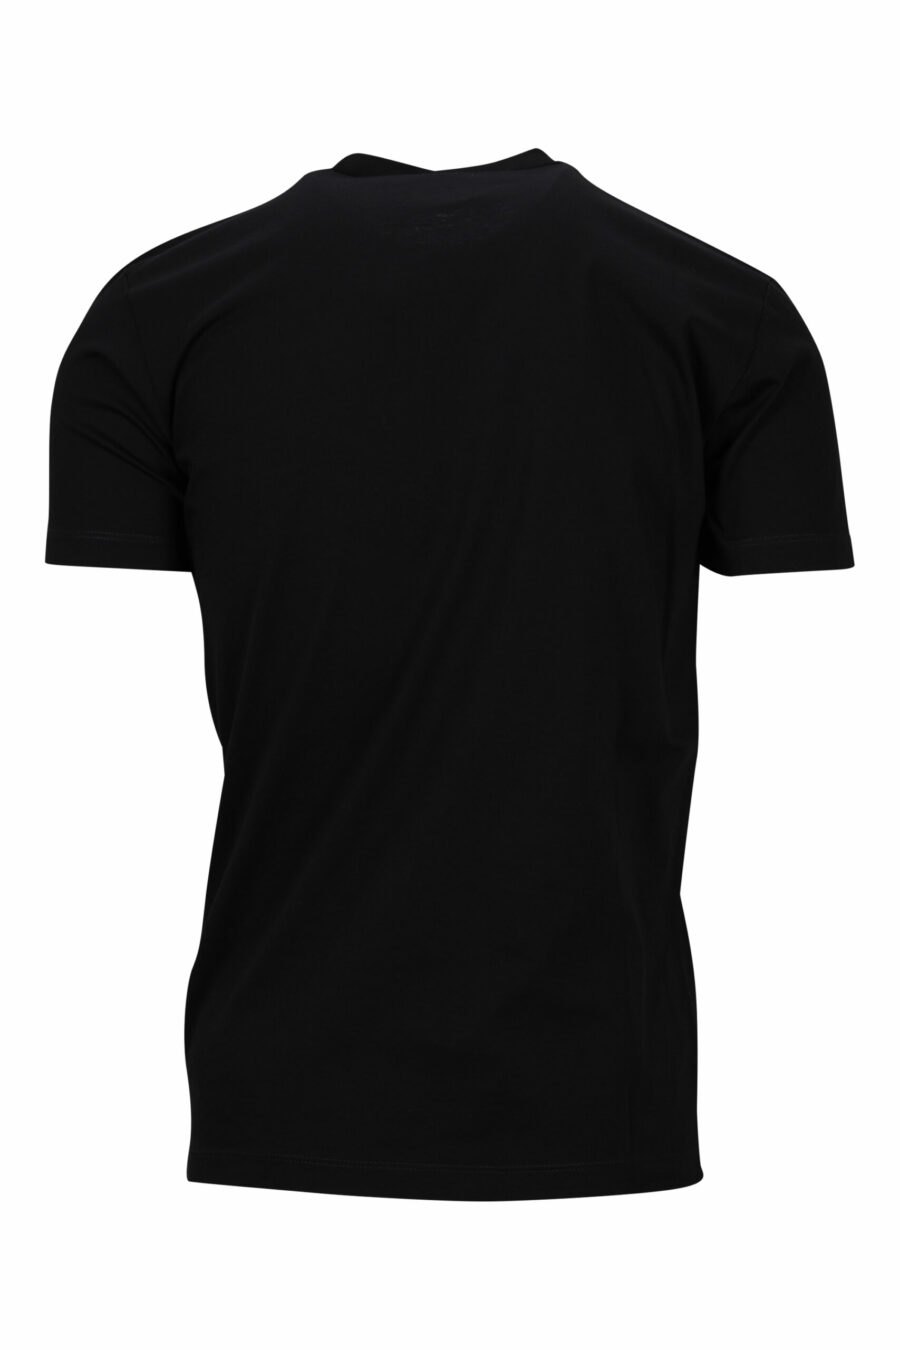 T-shirt preta com maxilogo "ícone" verde néon esbatido - 8054148359126 1 à escala